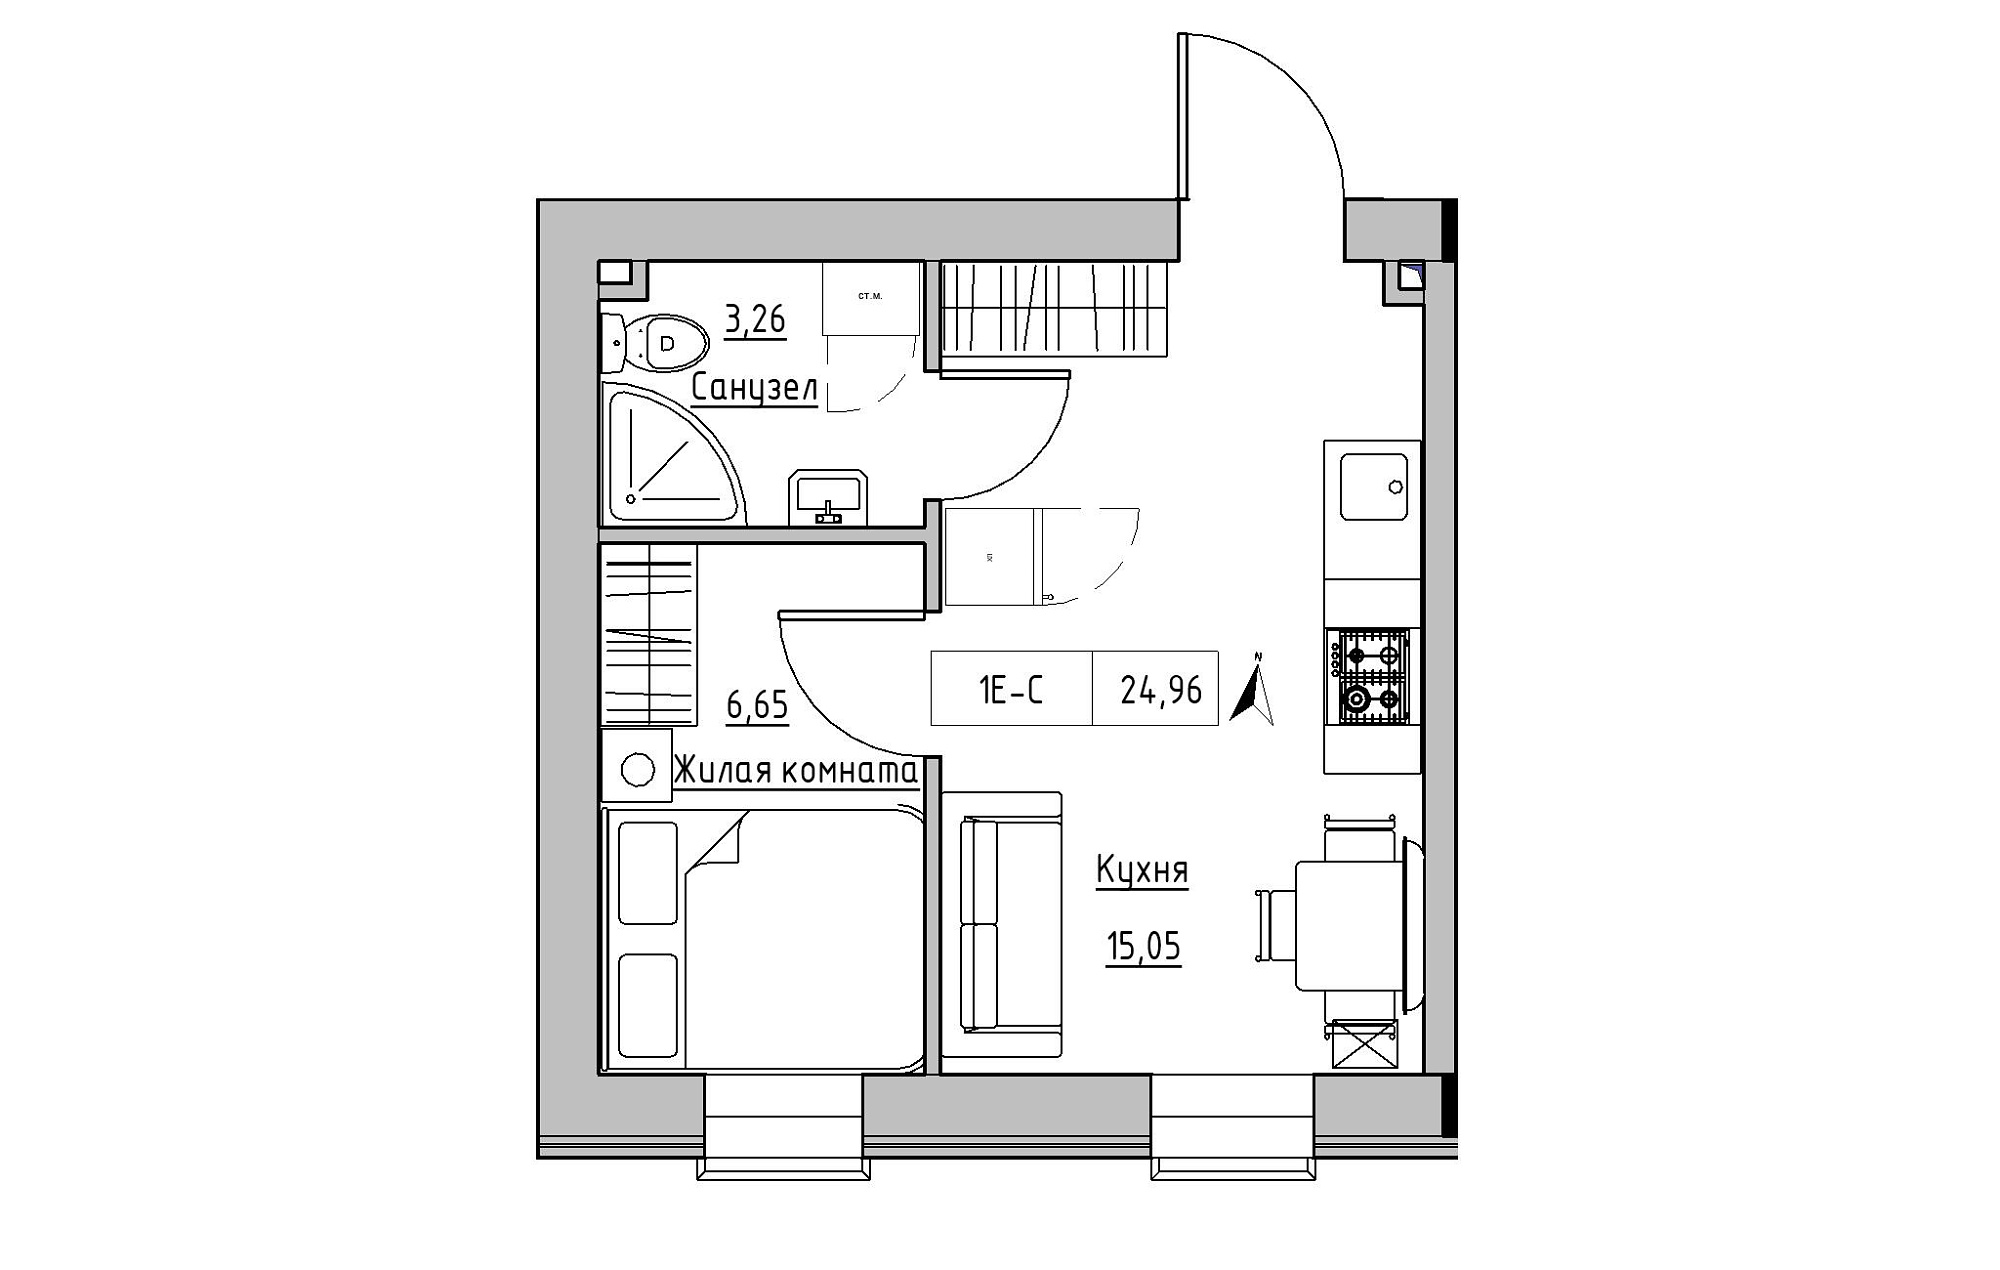 Планування 1-к квартира площею 24.96м2, KS-019-02/0012.